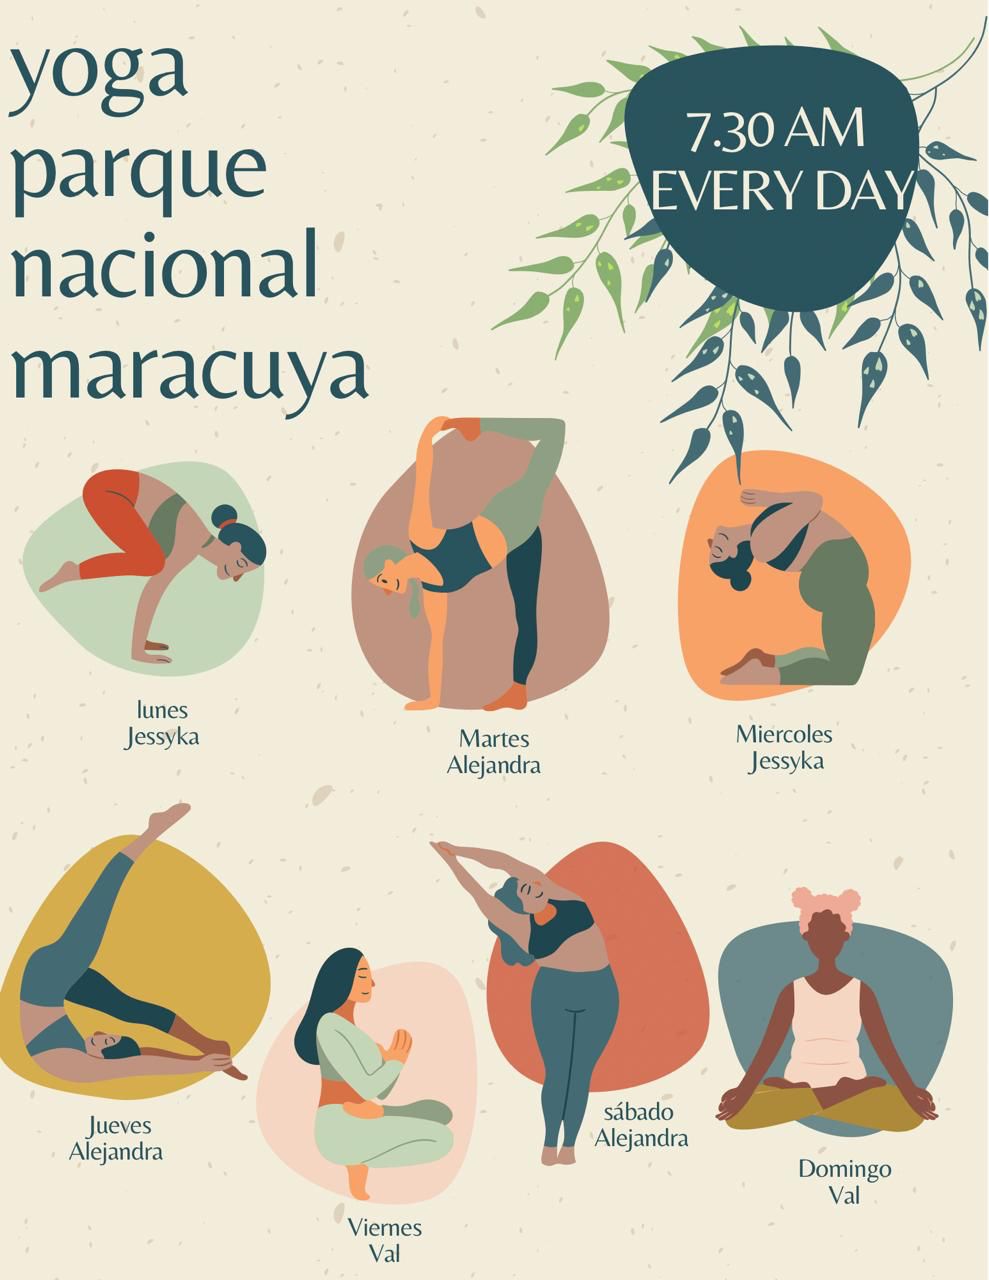 Yoga Parque Nacional Maracuya